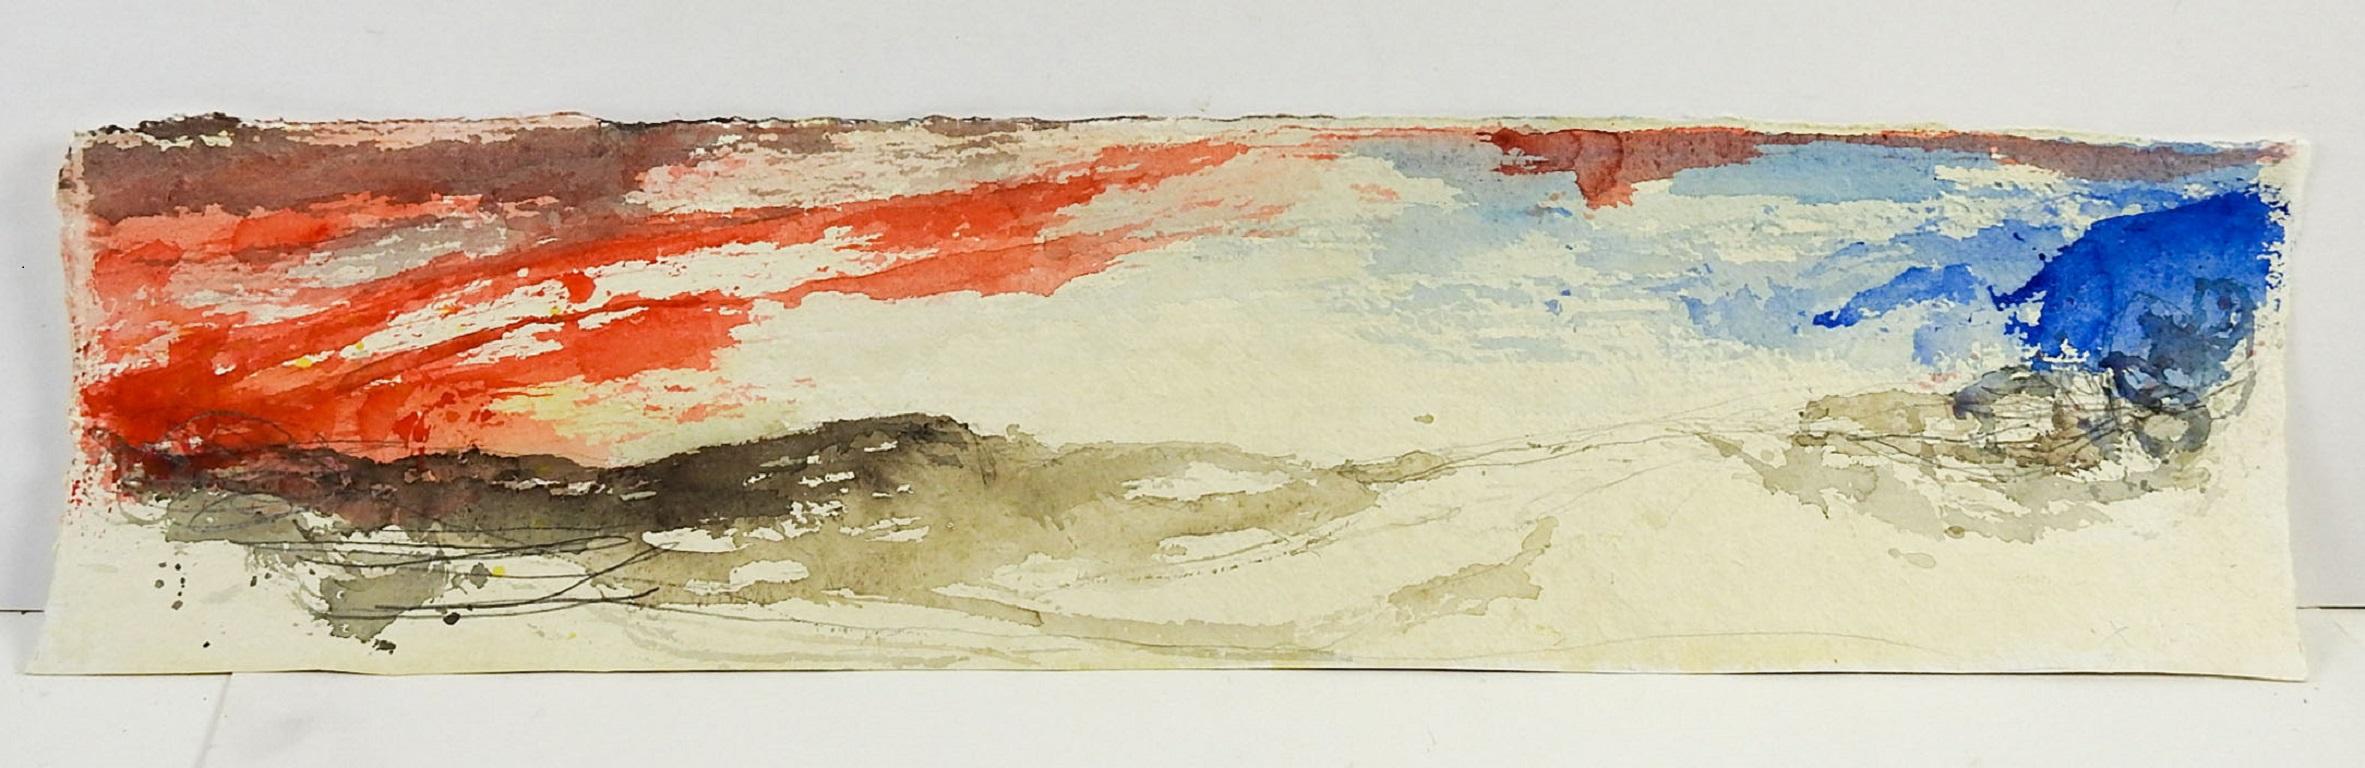 Paysage abstrait long format du début du 21e siècle en rouge, bleu et gris de George Turner (1943-2014) utilisant l'aquarelle et le crayon sur papier aquarelle épais. Non encadrée, signée d'un X en bas à droite, provenant de la succession de